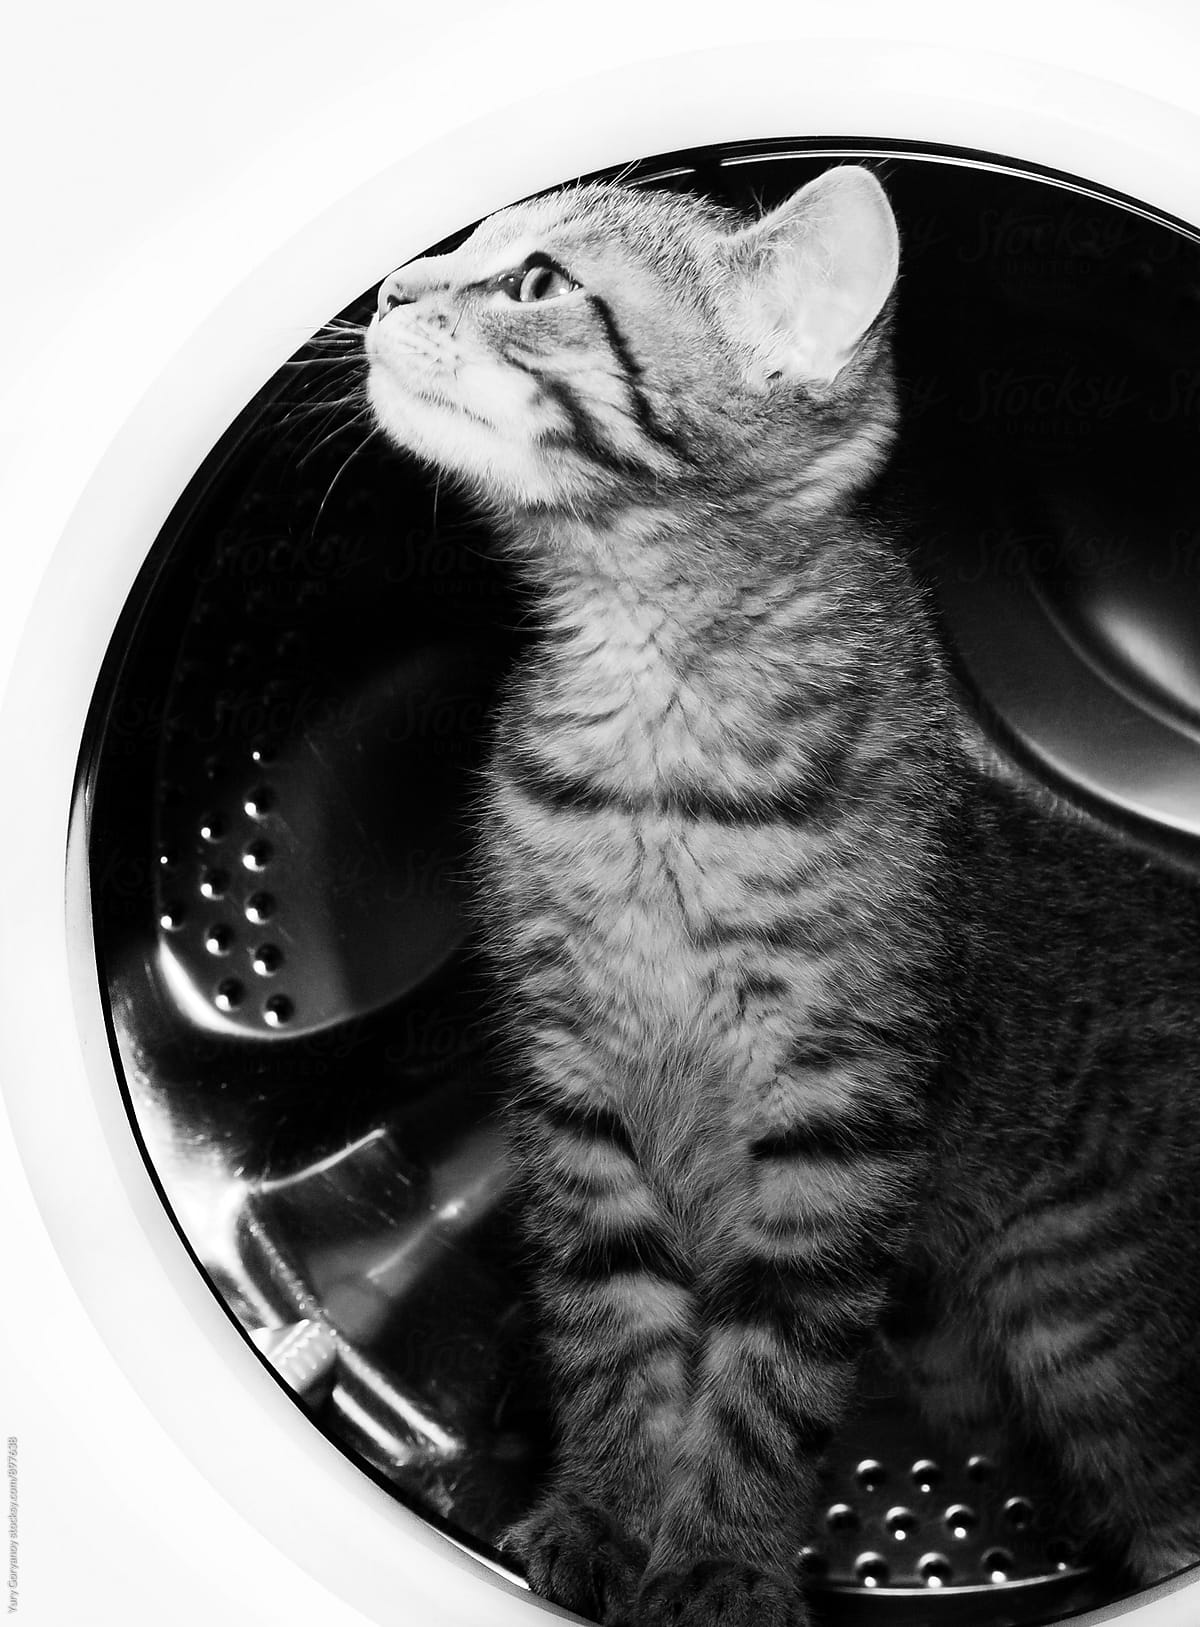 Kitty in washing machine